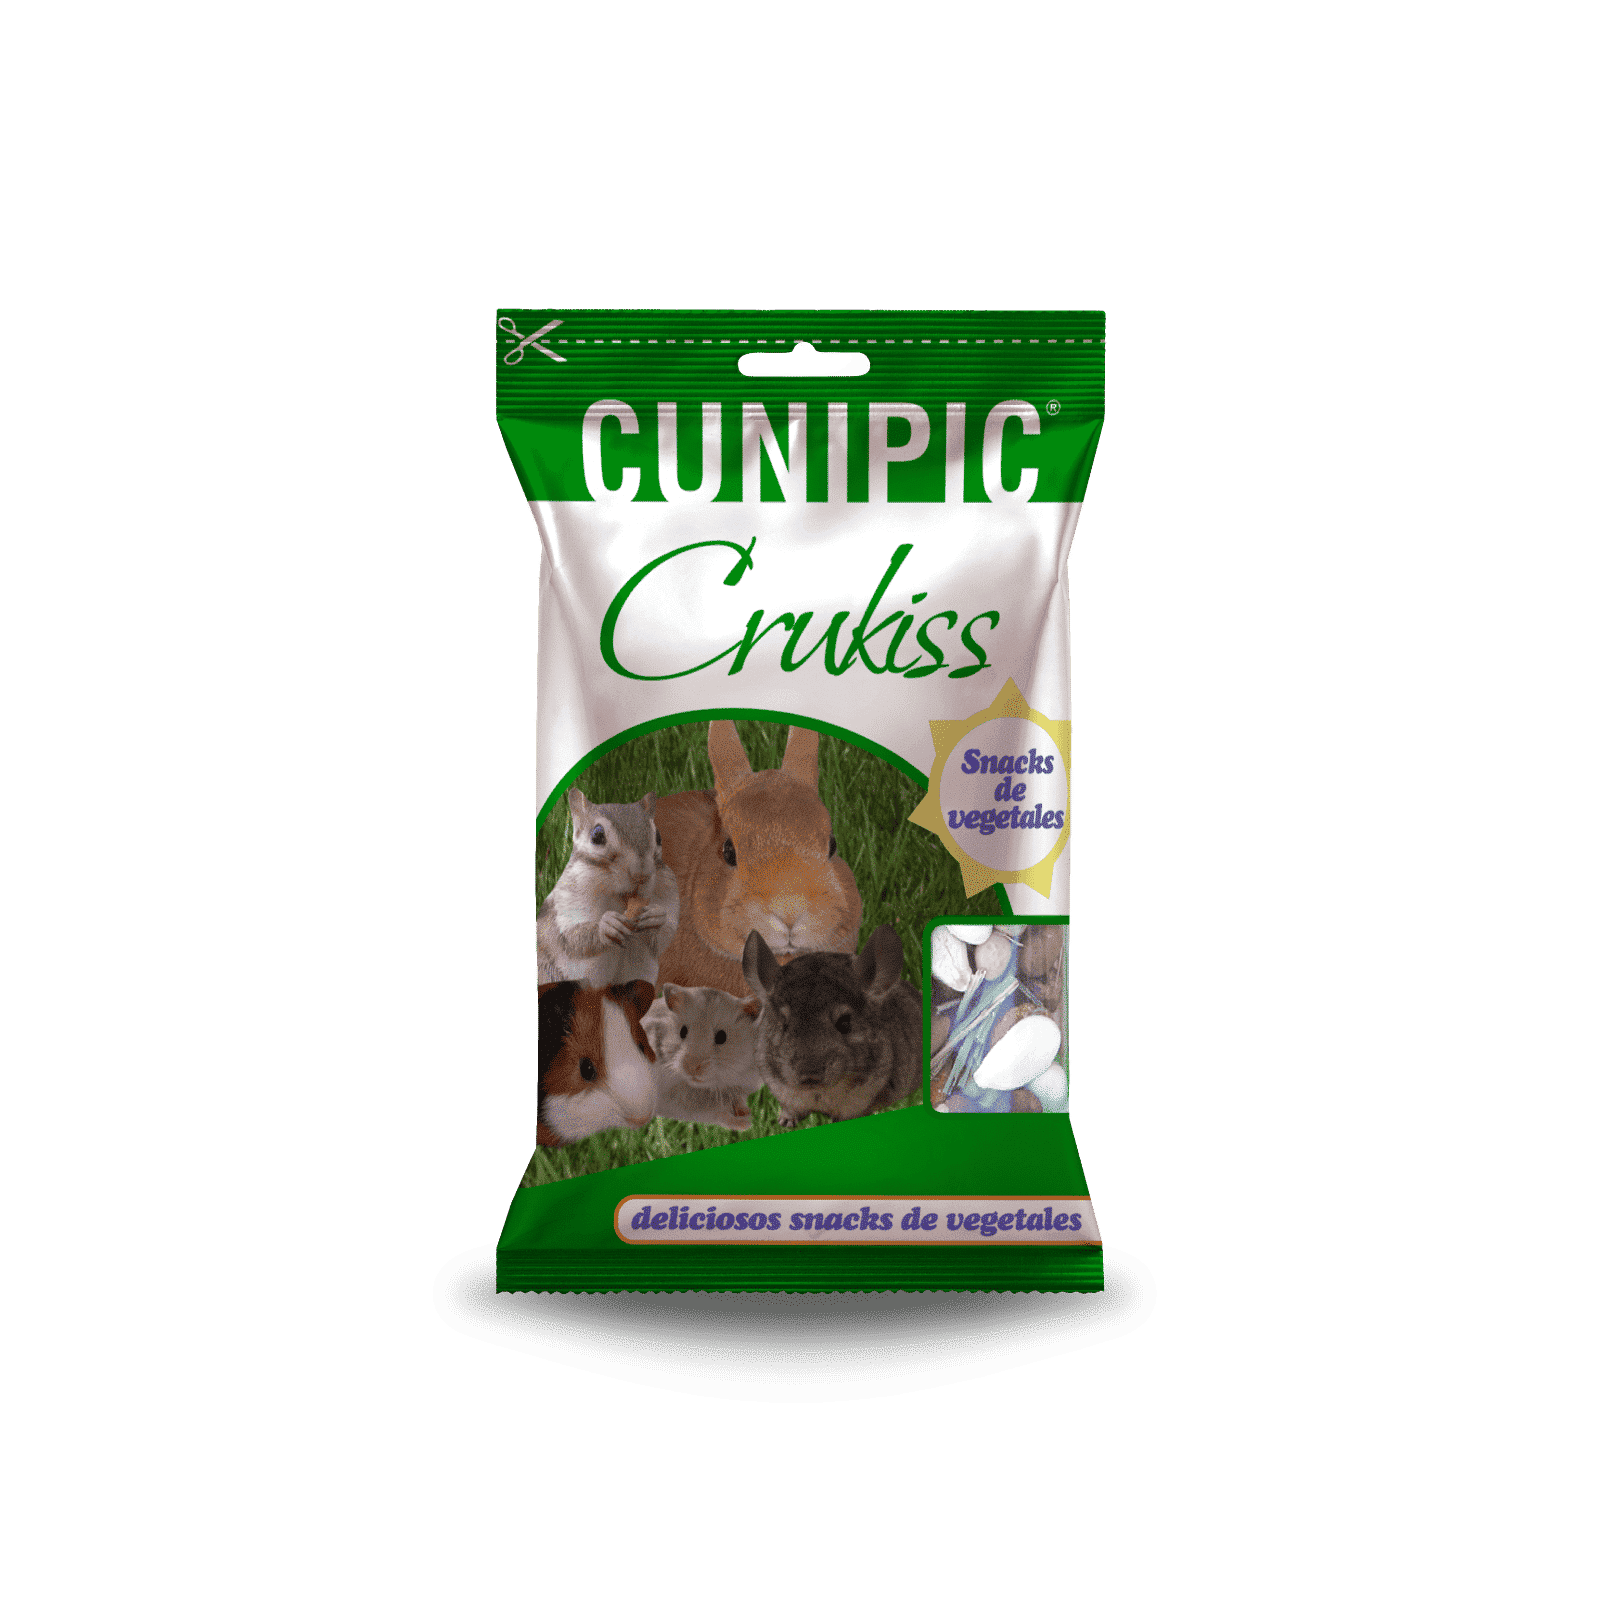 Snack Crukiss de vegetales para roedores y conejos 100 g Cunipic